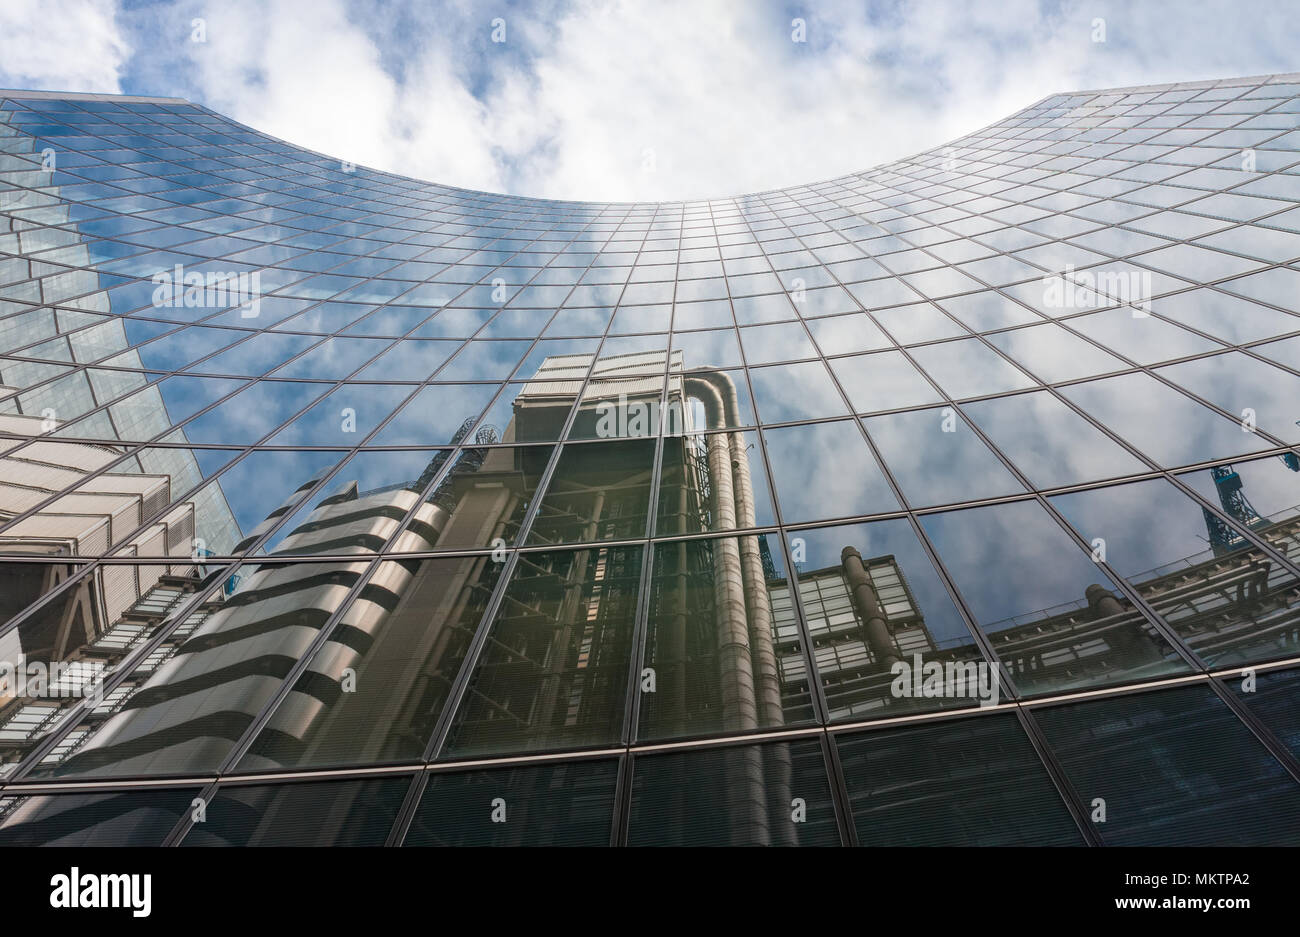 Ville de LONDON, LONDON-Septembre 7,2017 : Reflet de la Lloyds building high-tech en style architectural de façade de l'édifice Willis sur Septem Banque D'Images